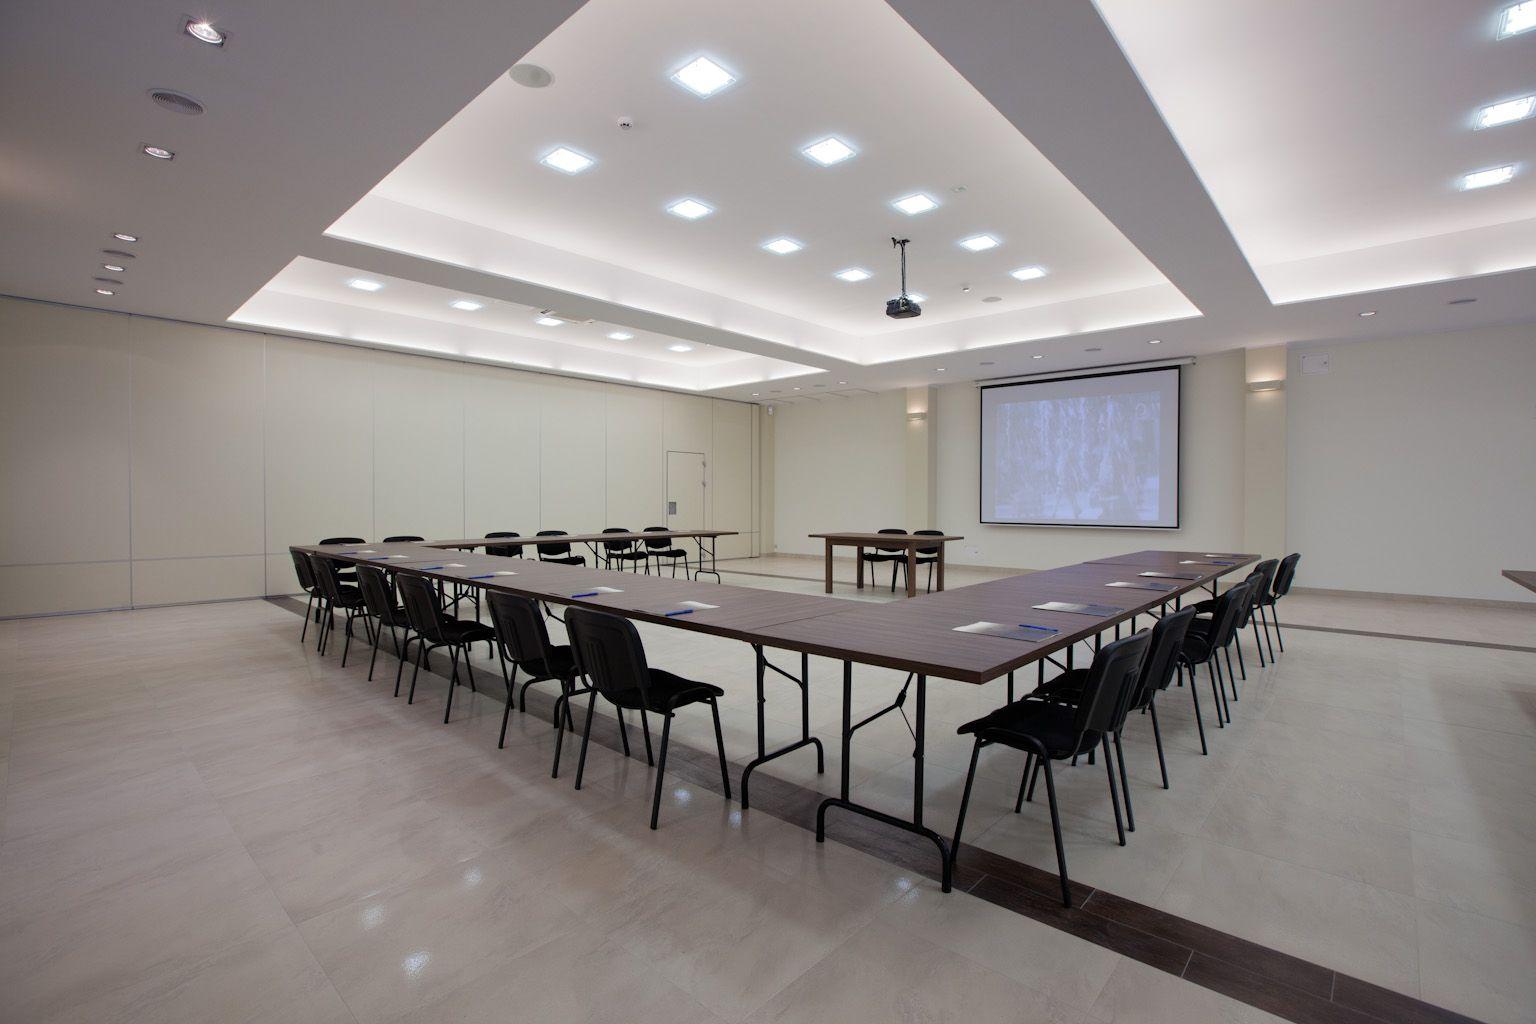 Sala konferencyjna z projektorem i stołami ułożonymi pośrodku